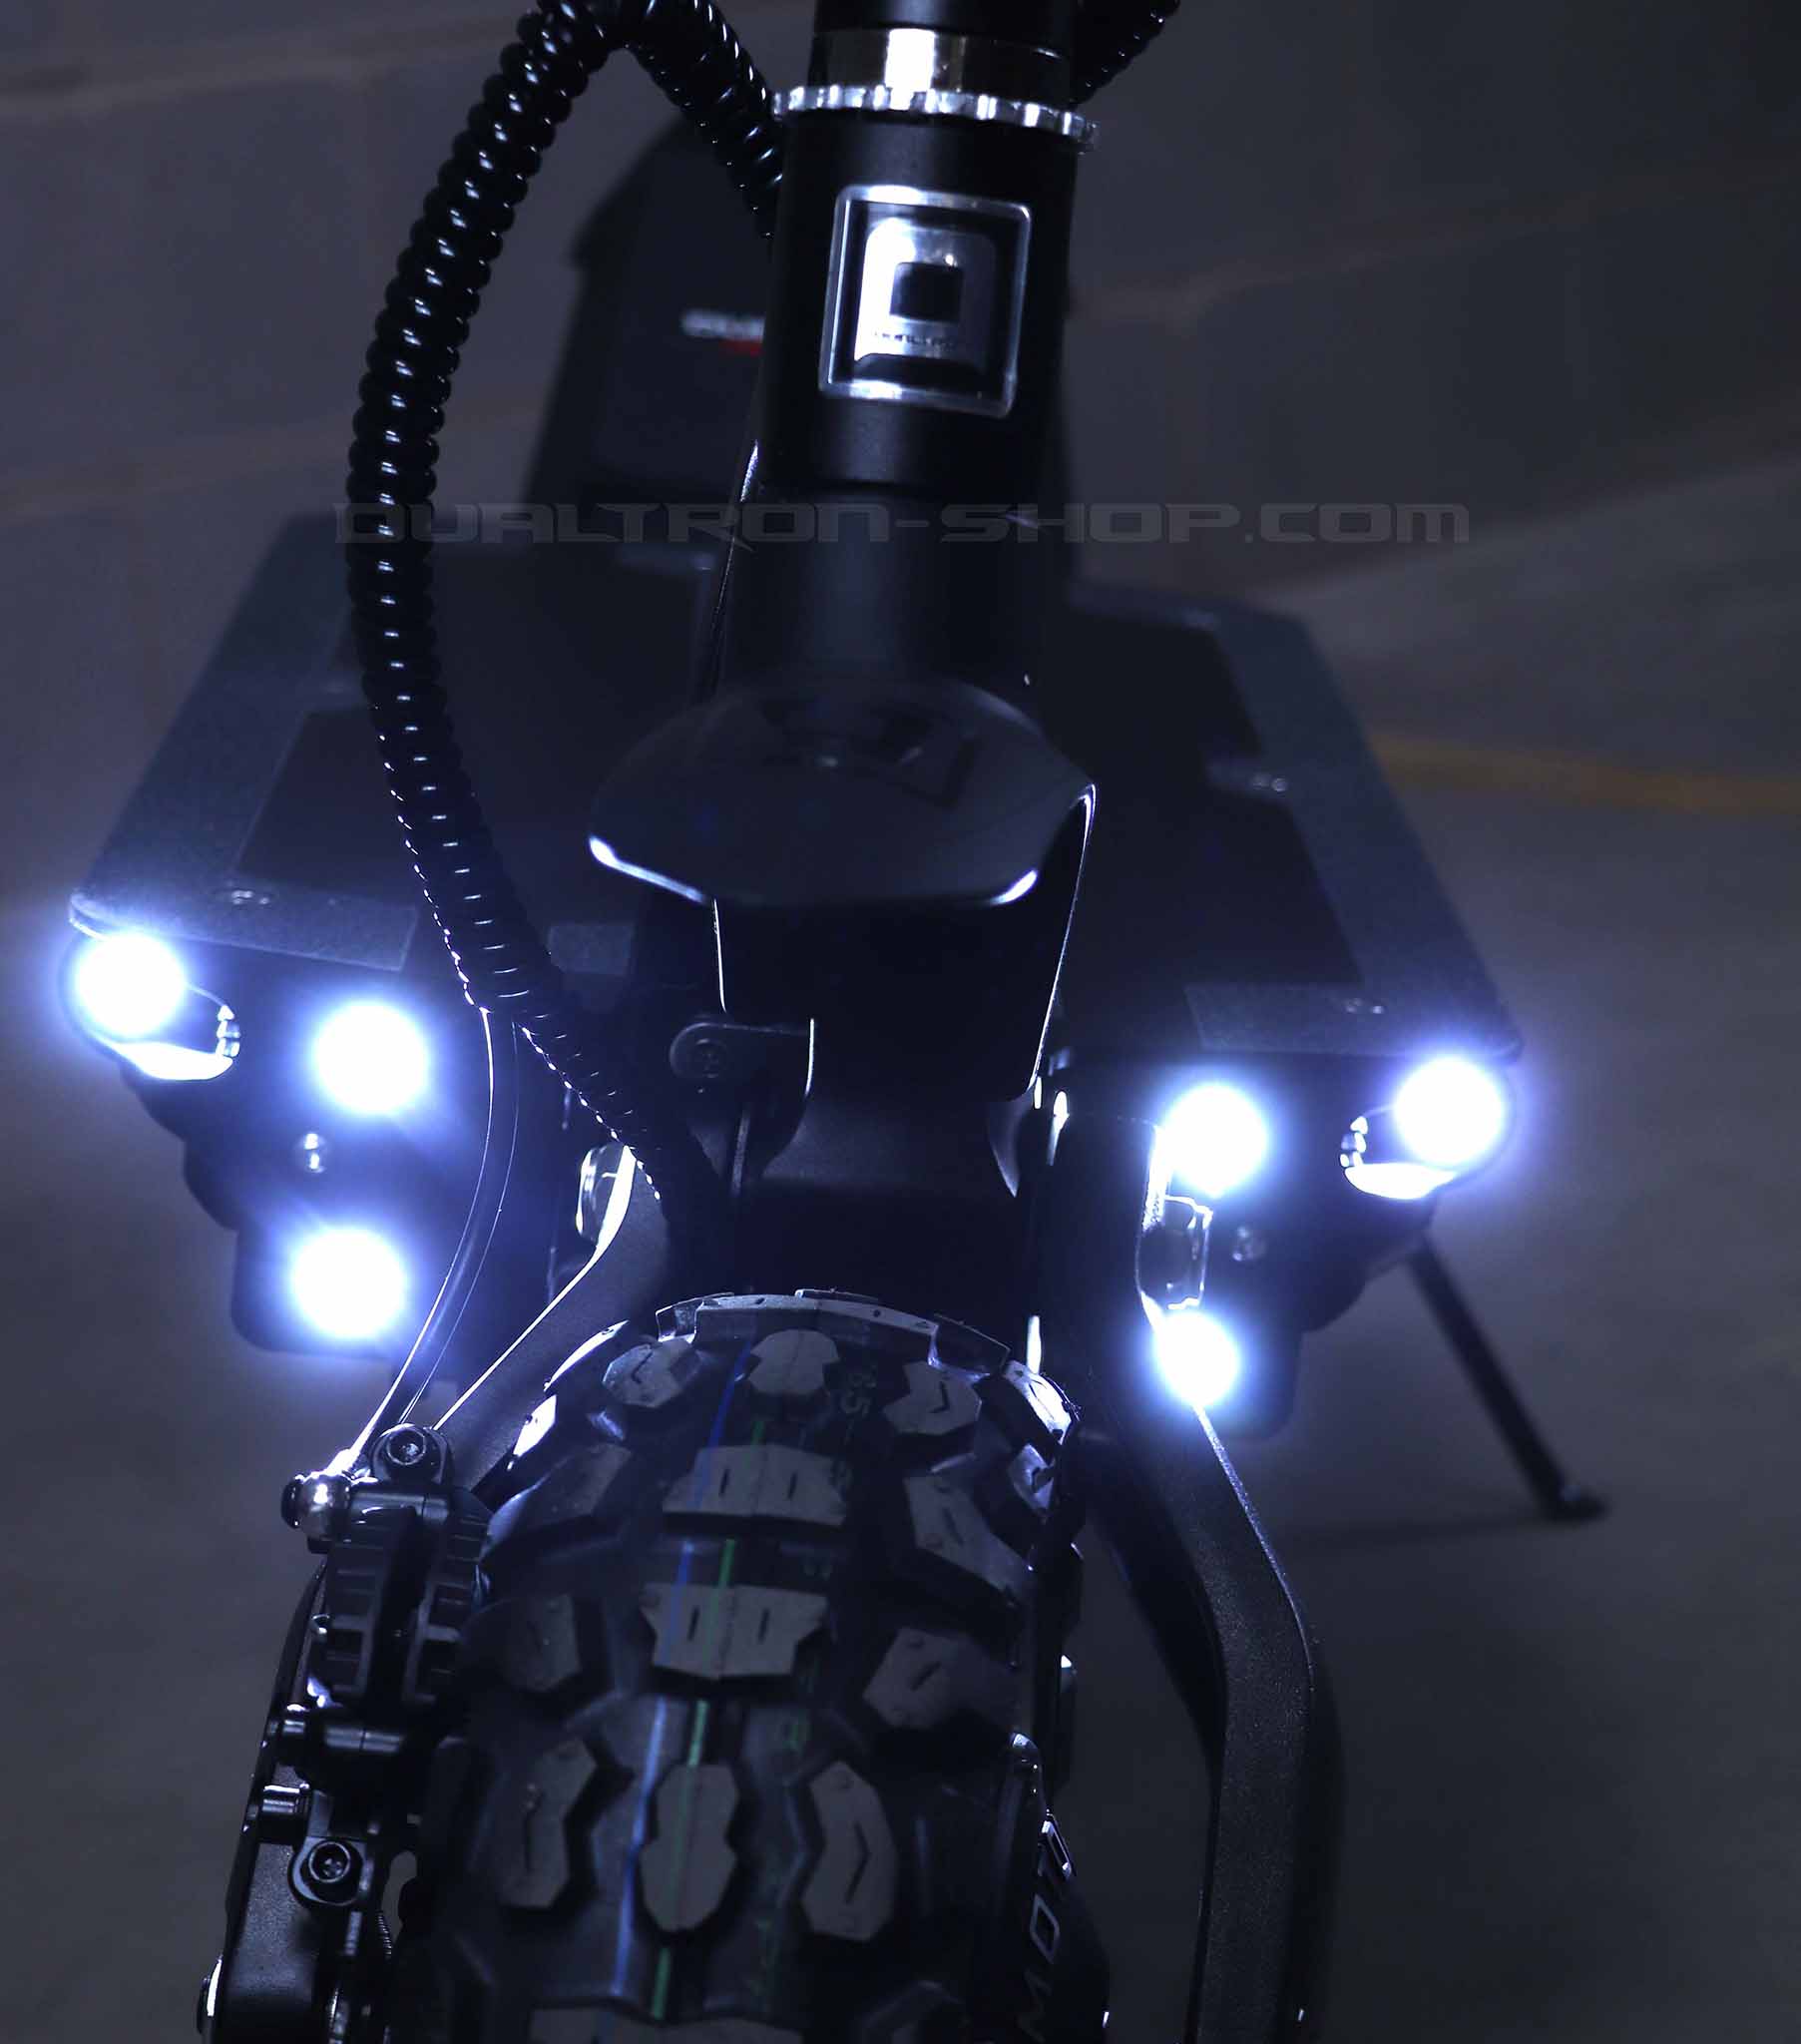 Scooter eléctrico todoterreno Dualtron Ultra 2